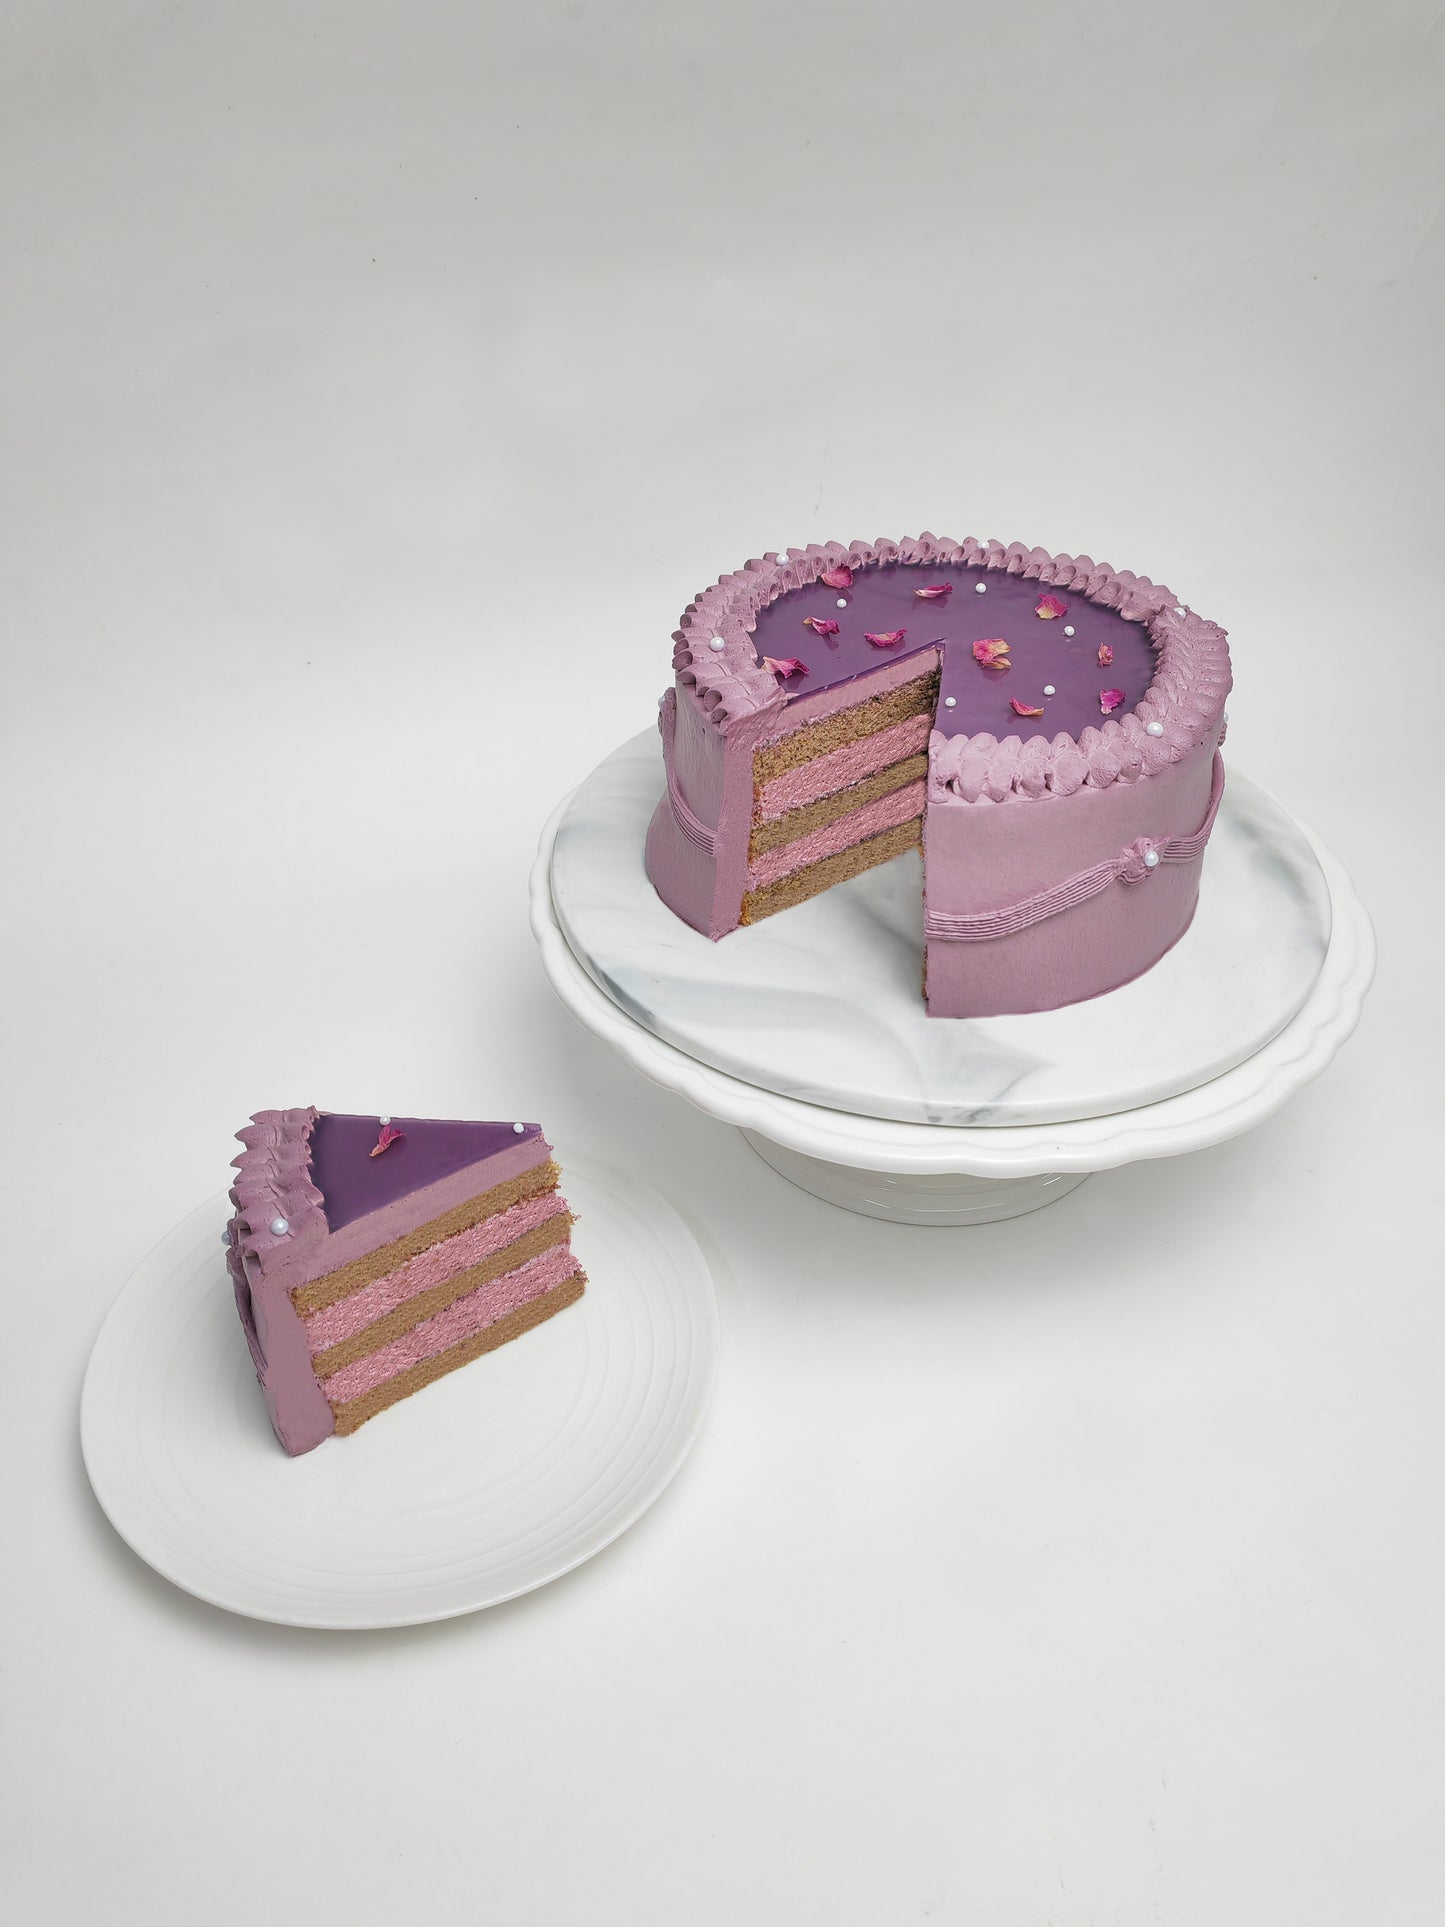 玫塊雜莓蛋糕 Mamma Mia Cake (Mother's Day Edition)